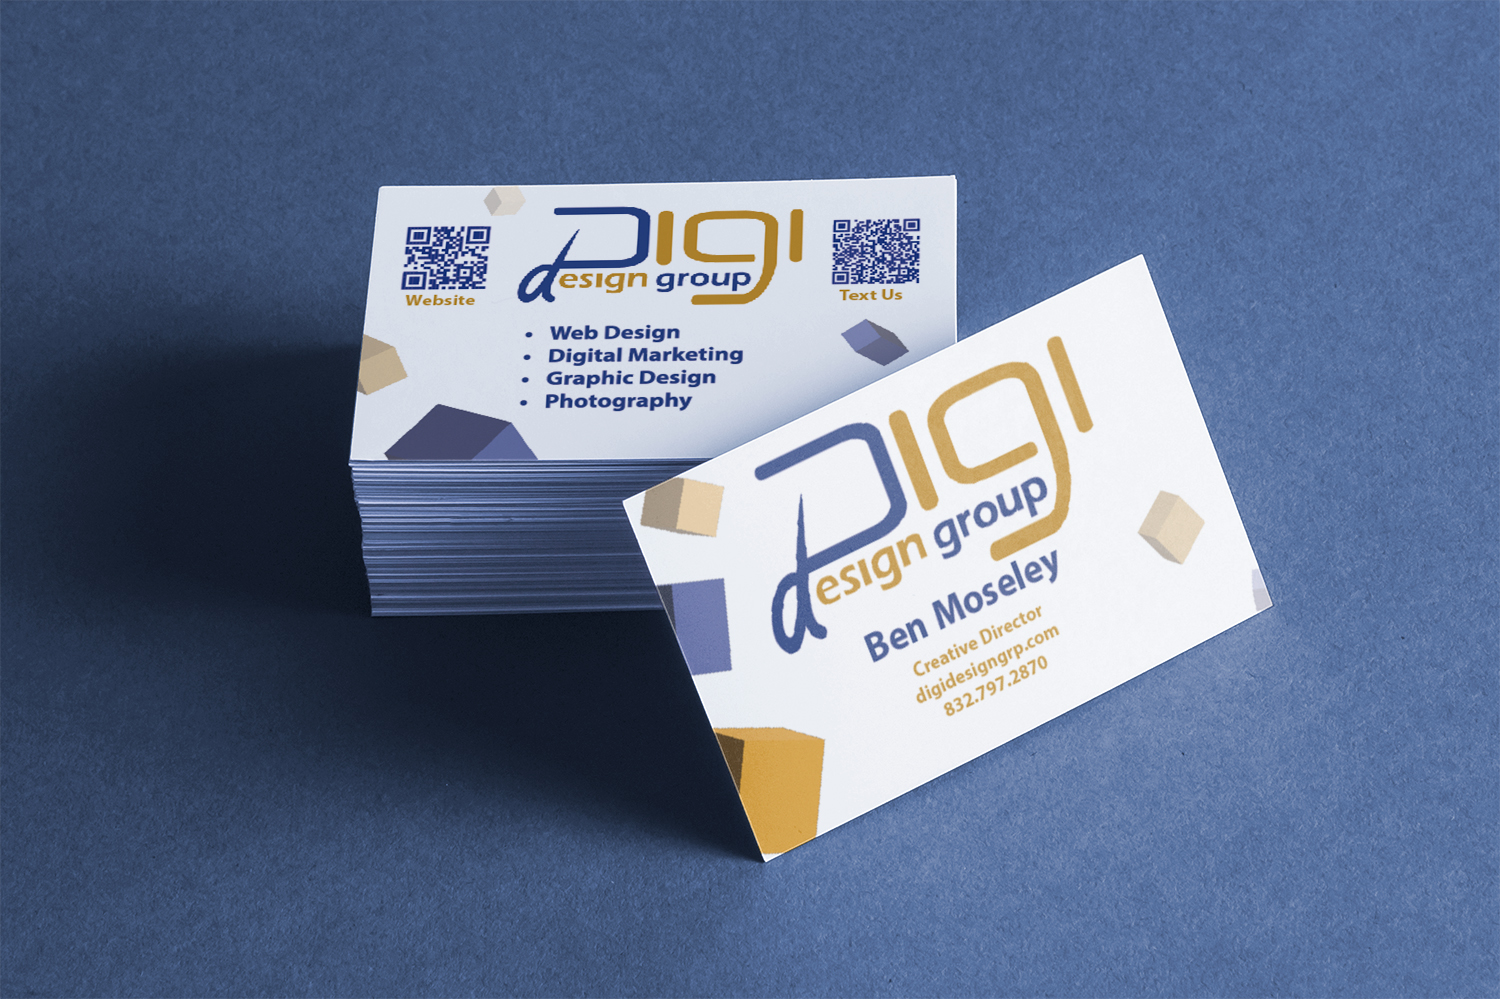 Digi Design Group Business Card Mockup